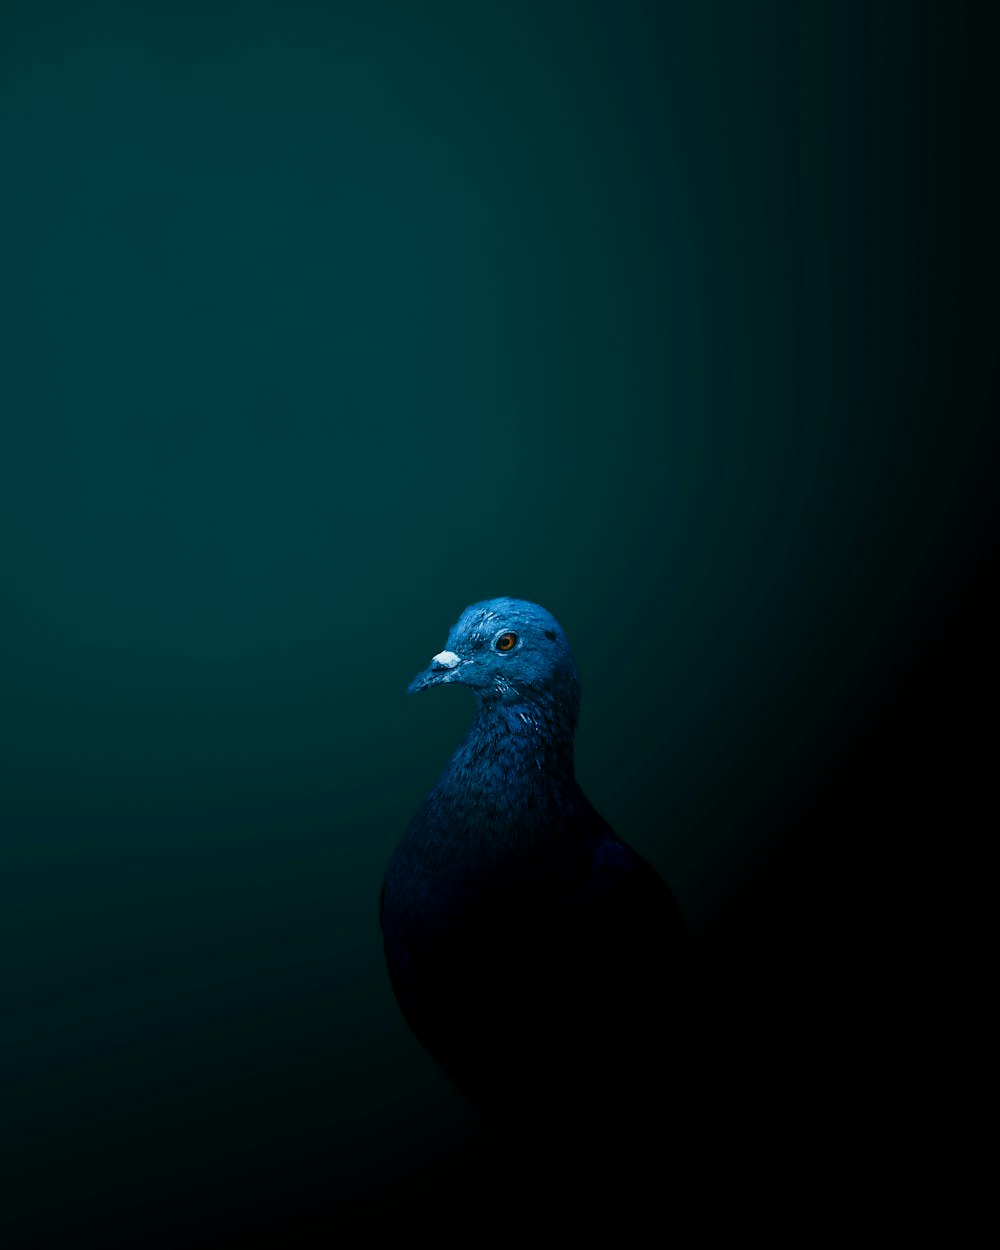 Un oiseau bleu se tient dans l’obscurité